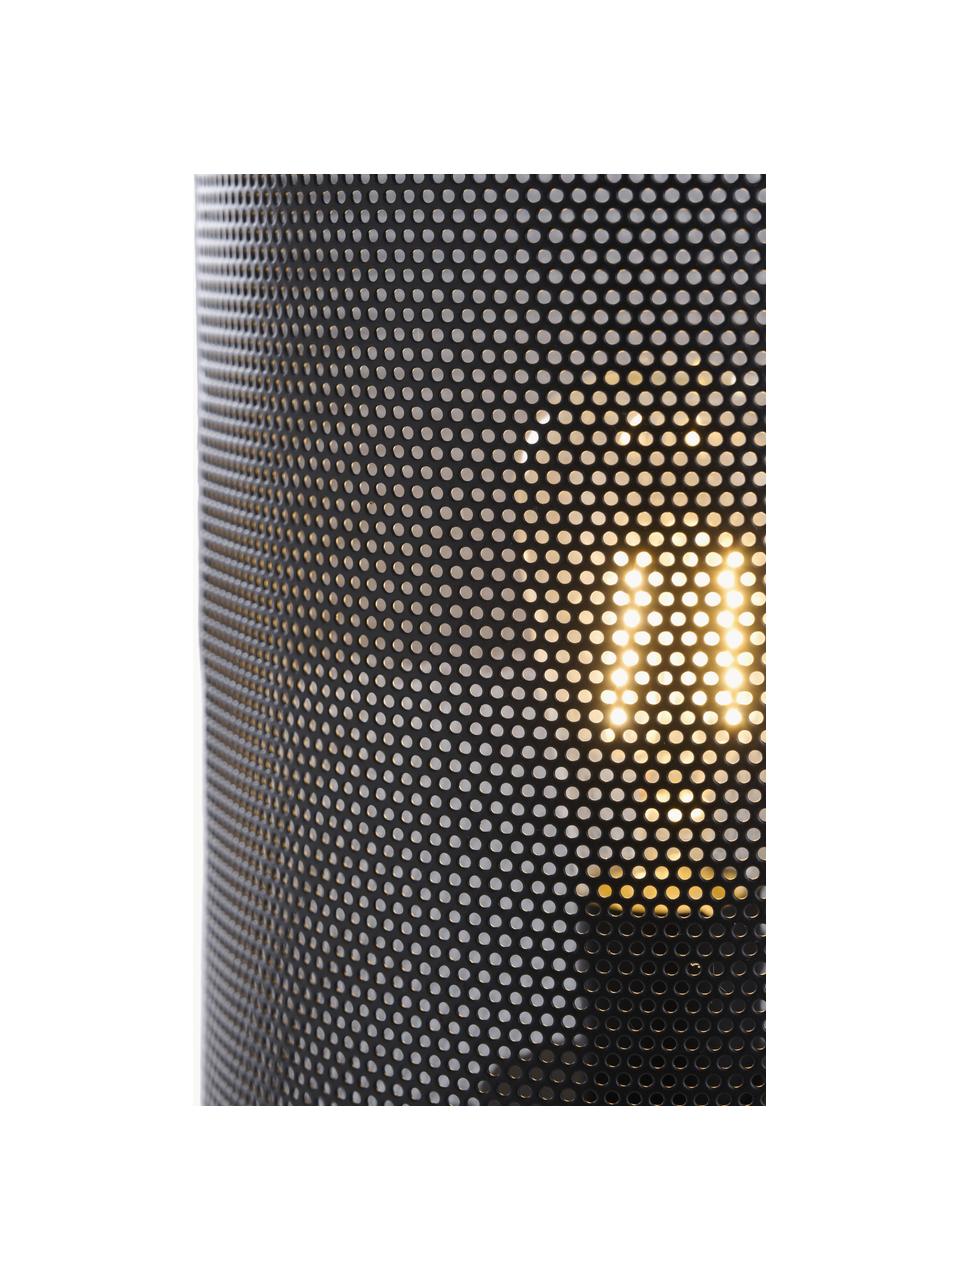 Lampe d'extérieur LED mobile Evening, Plastique, métal, enduit, Noir, Ø 15 x haut. 33 cm